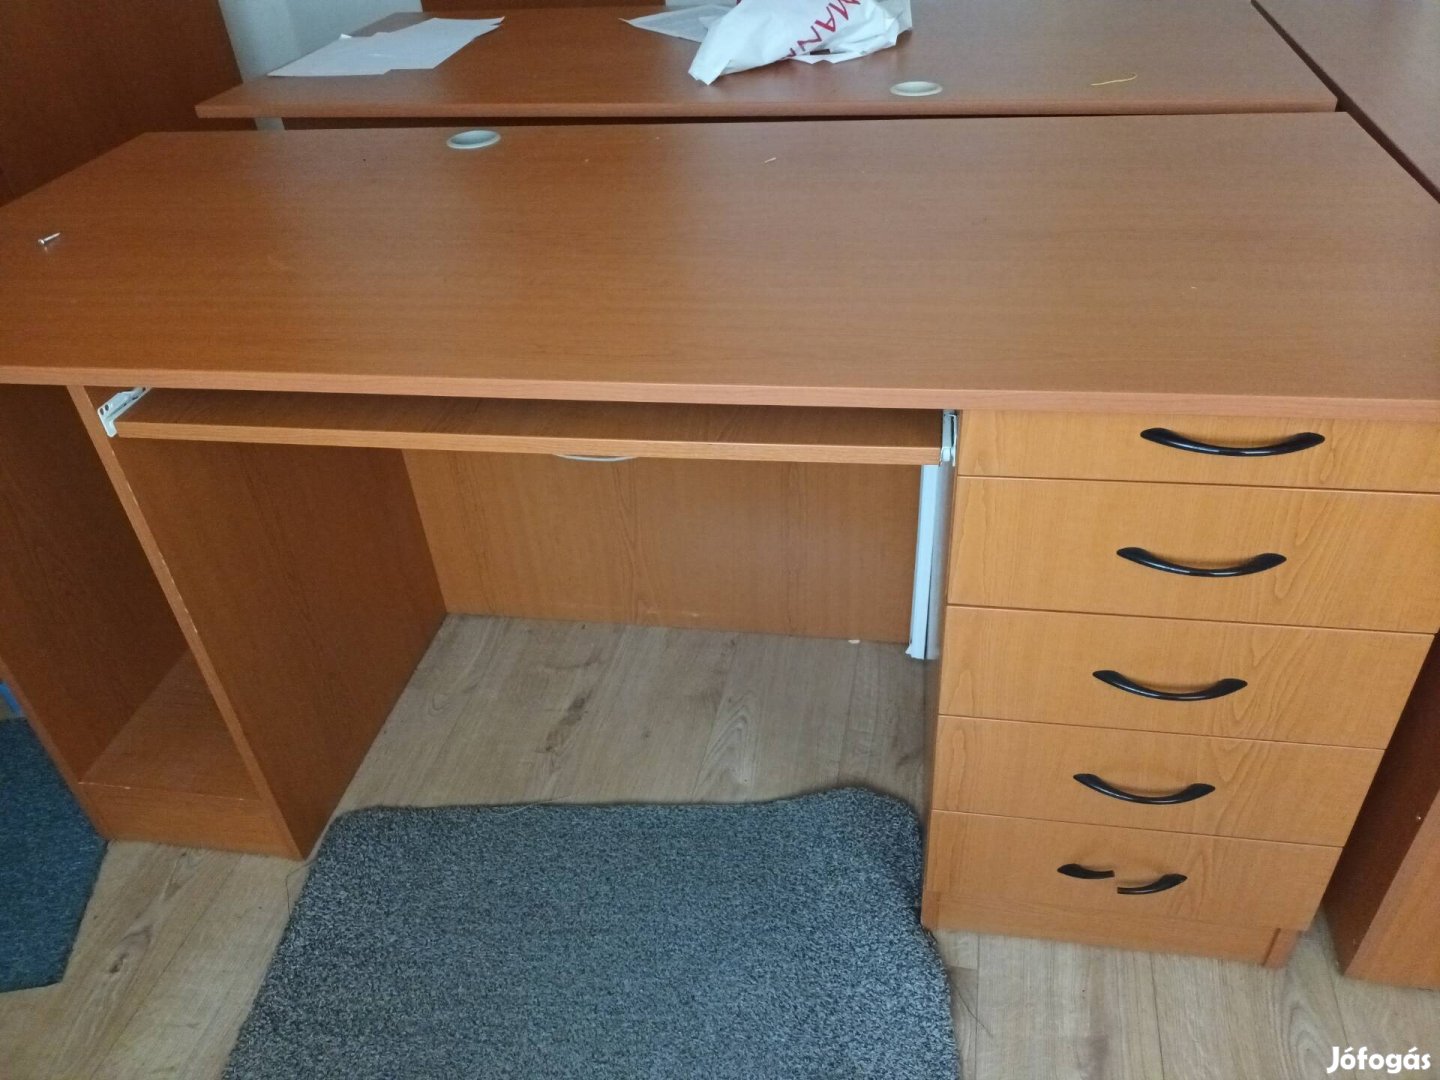 Eladó 2 darab íróasztal újszerű állapotban